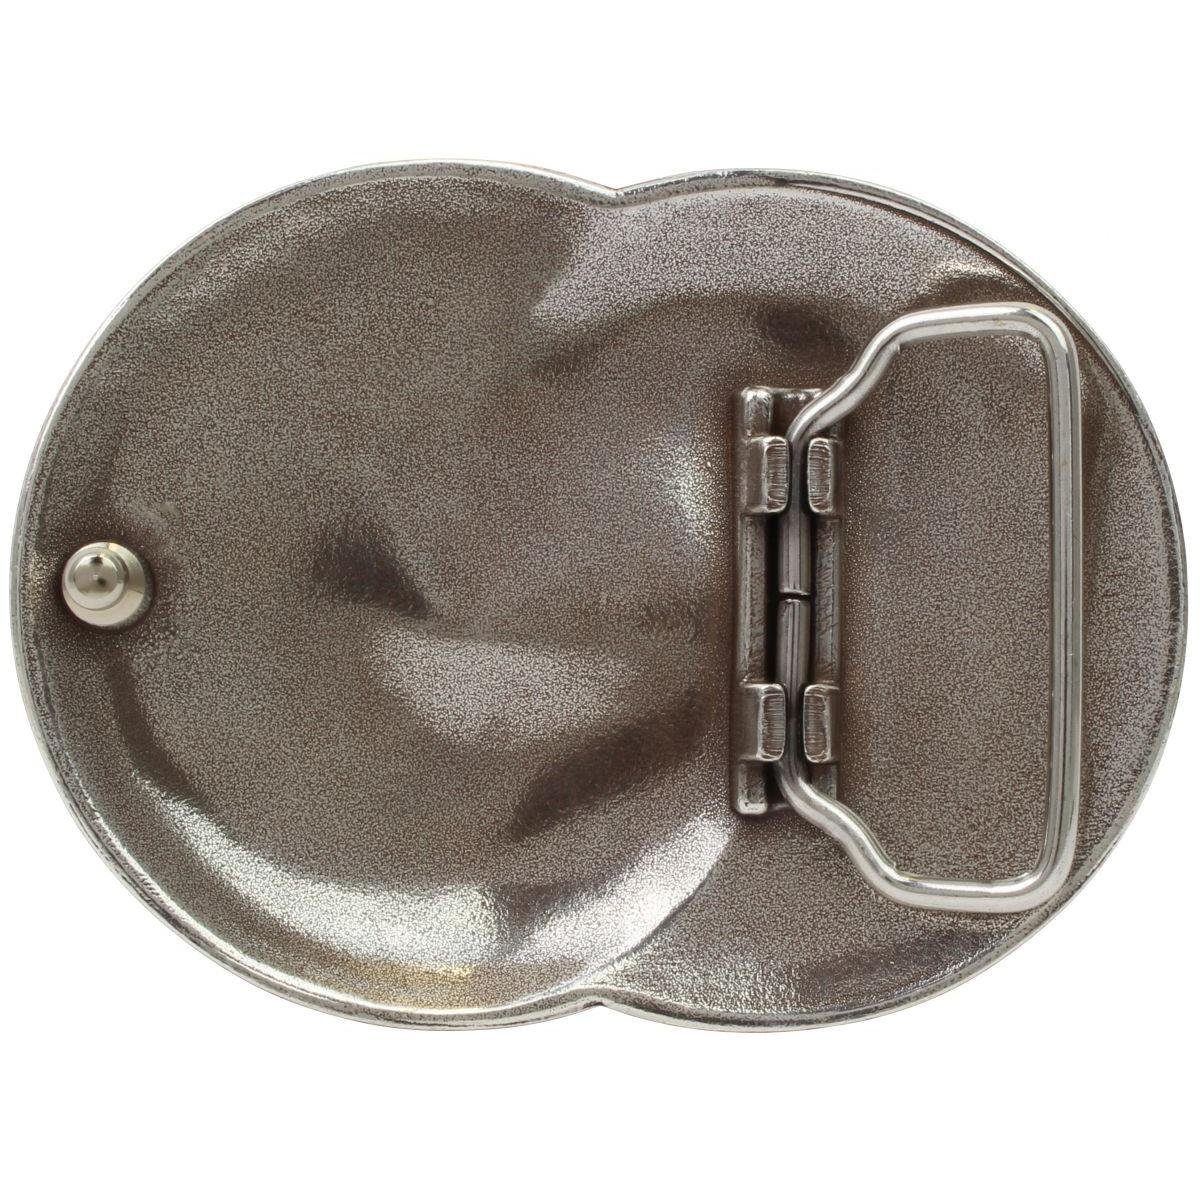 BELTINGER Gürtelschnalle Saragossa Gürtel cm - 4,0 40mm Wechselschließe - Gürtelschließe Buckle